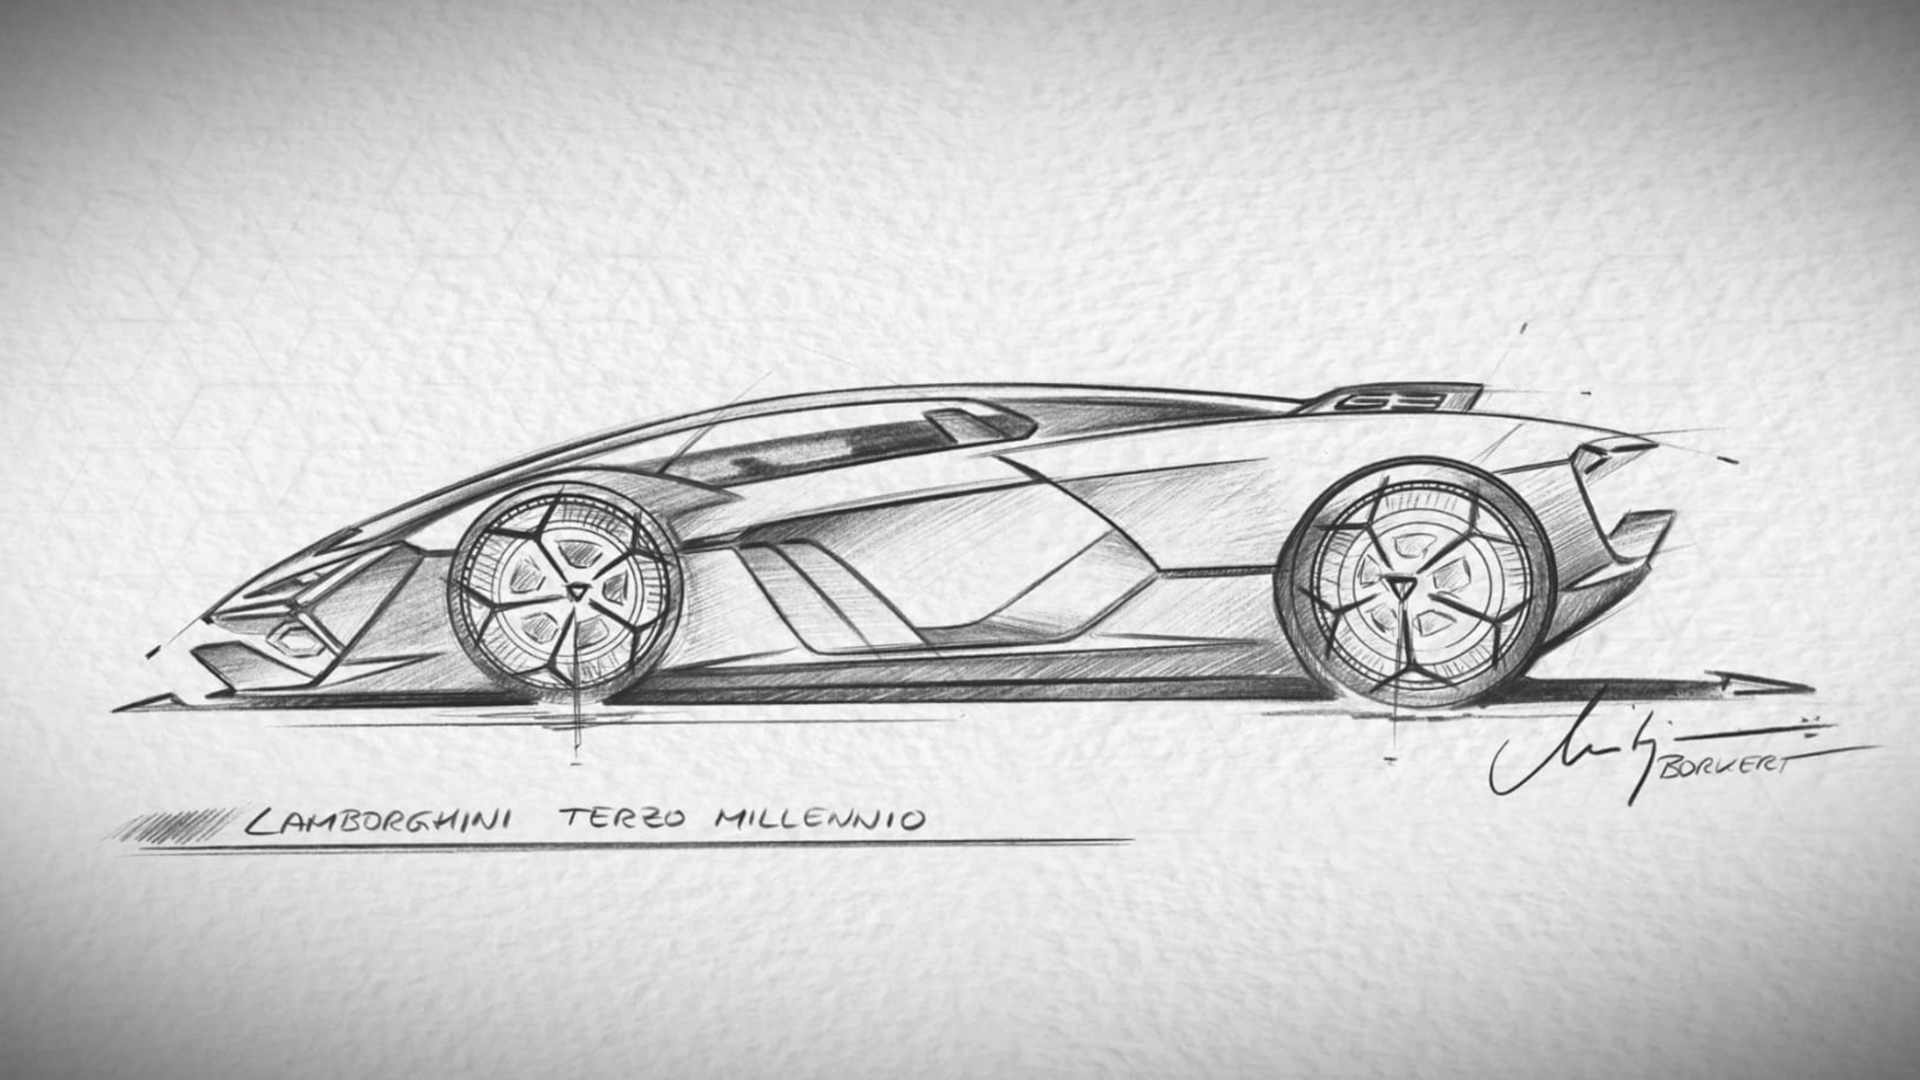 Lamborghini - Car design sketches. Studio drawings of Lamborghini cars.